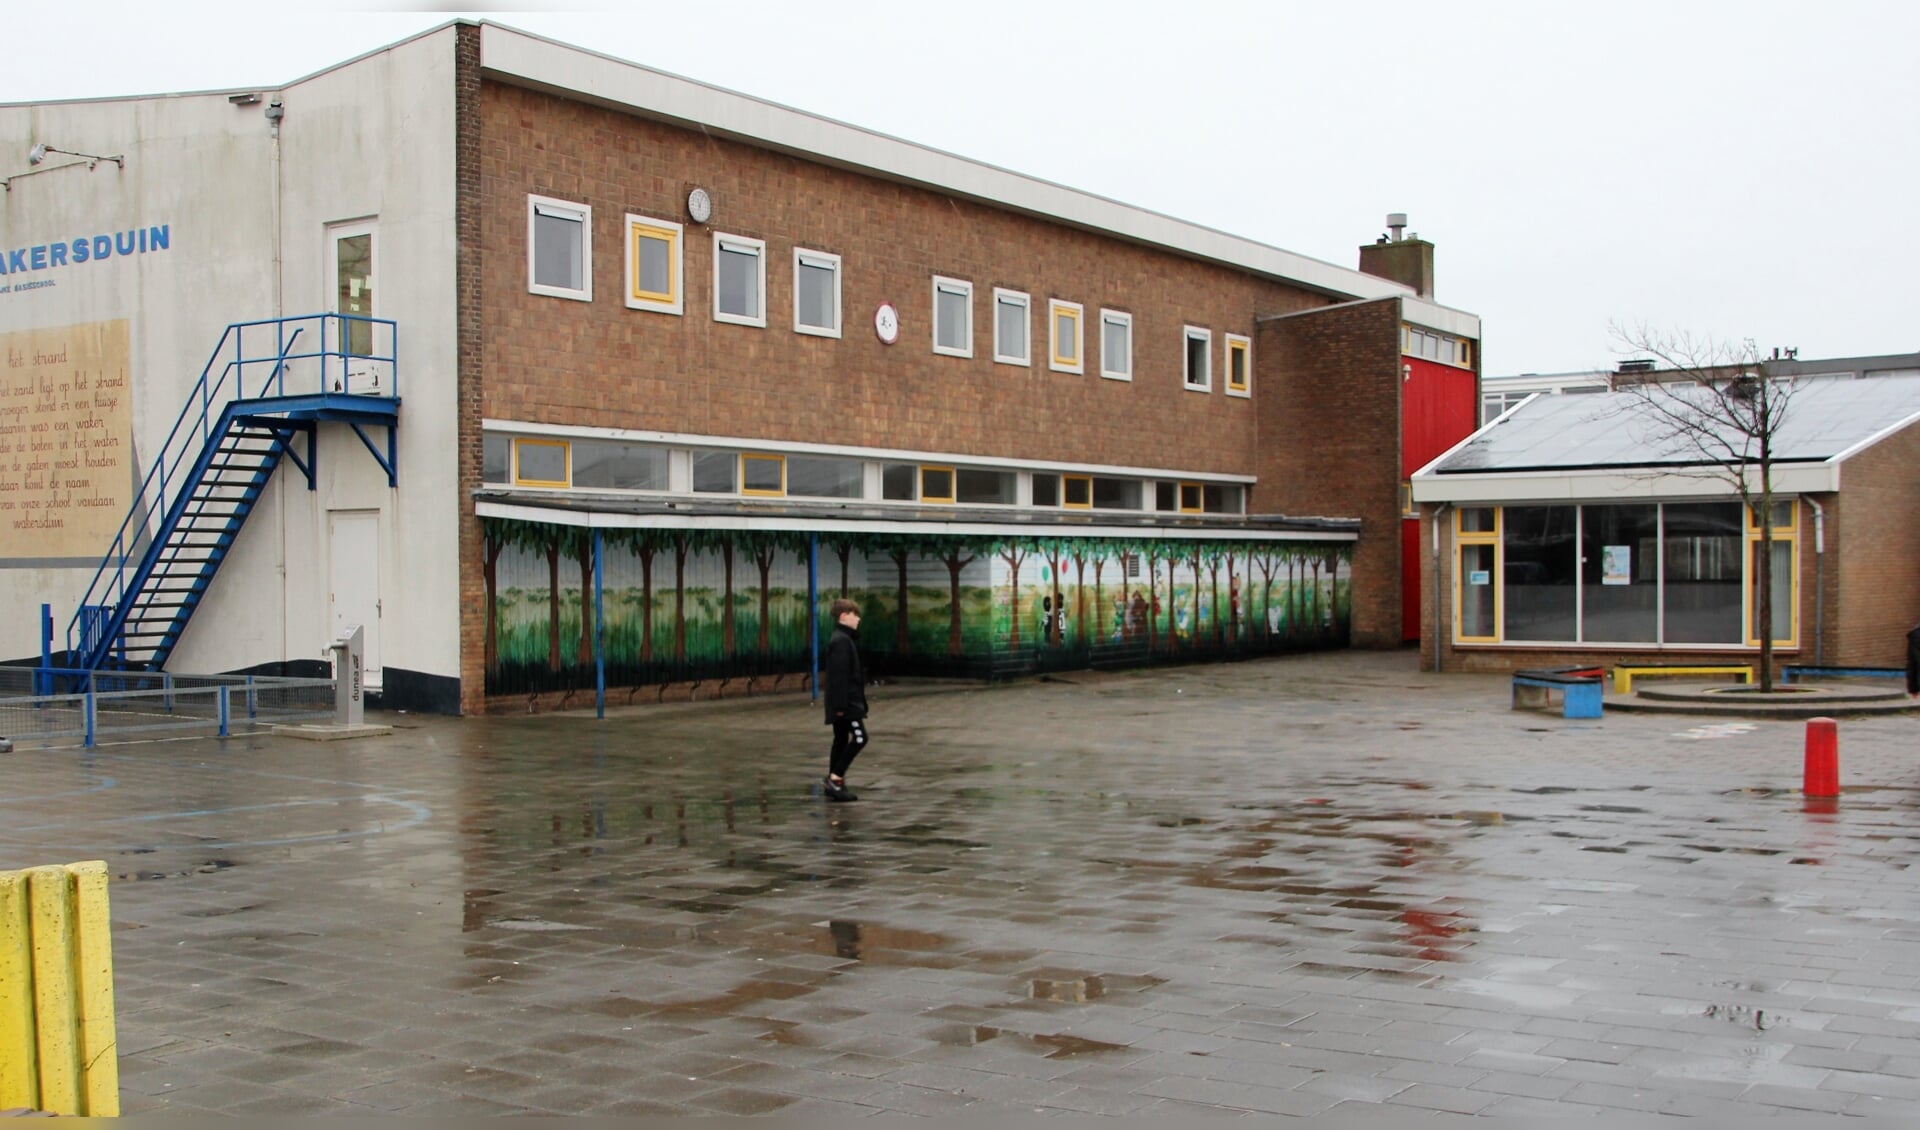 De gemeenteraad  ging akkoord met het mogelijke nieuwbouw  van fusieschool Wakersduin. | Foto: WS